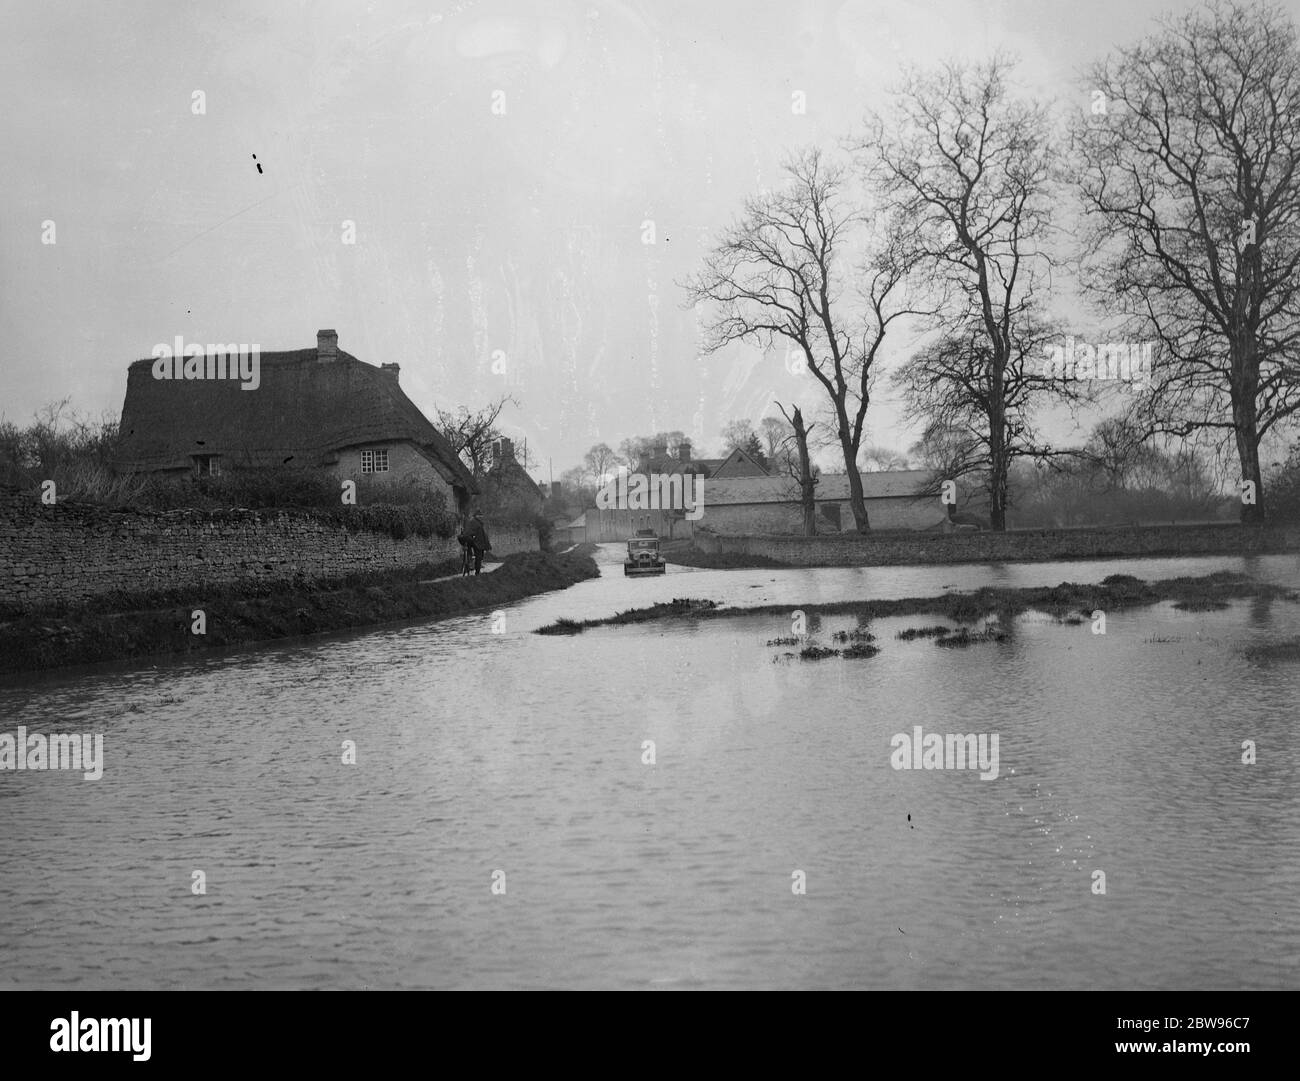 Fluss vollständig untergetauchts Oxfordshire Straße. Der River Ray brach seine Ufer bei Islip und vollständig untergetaucht die Oxford - Wheatley Straße für mehrere hundert Meter. Die Straße neu liegt unter zwei Füßen Wasser. Die untergetauchte Straße bei Islip. Mai 1932 Stockfoto